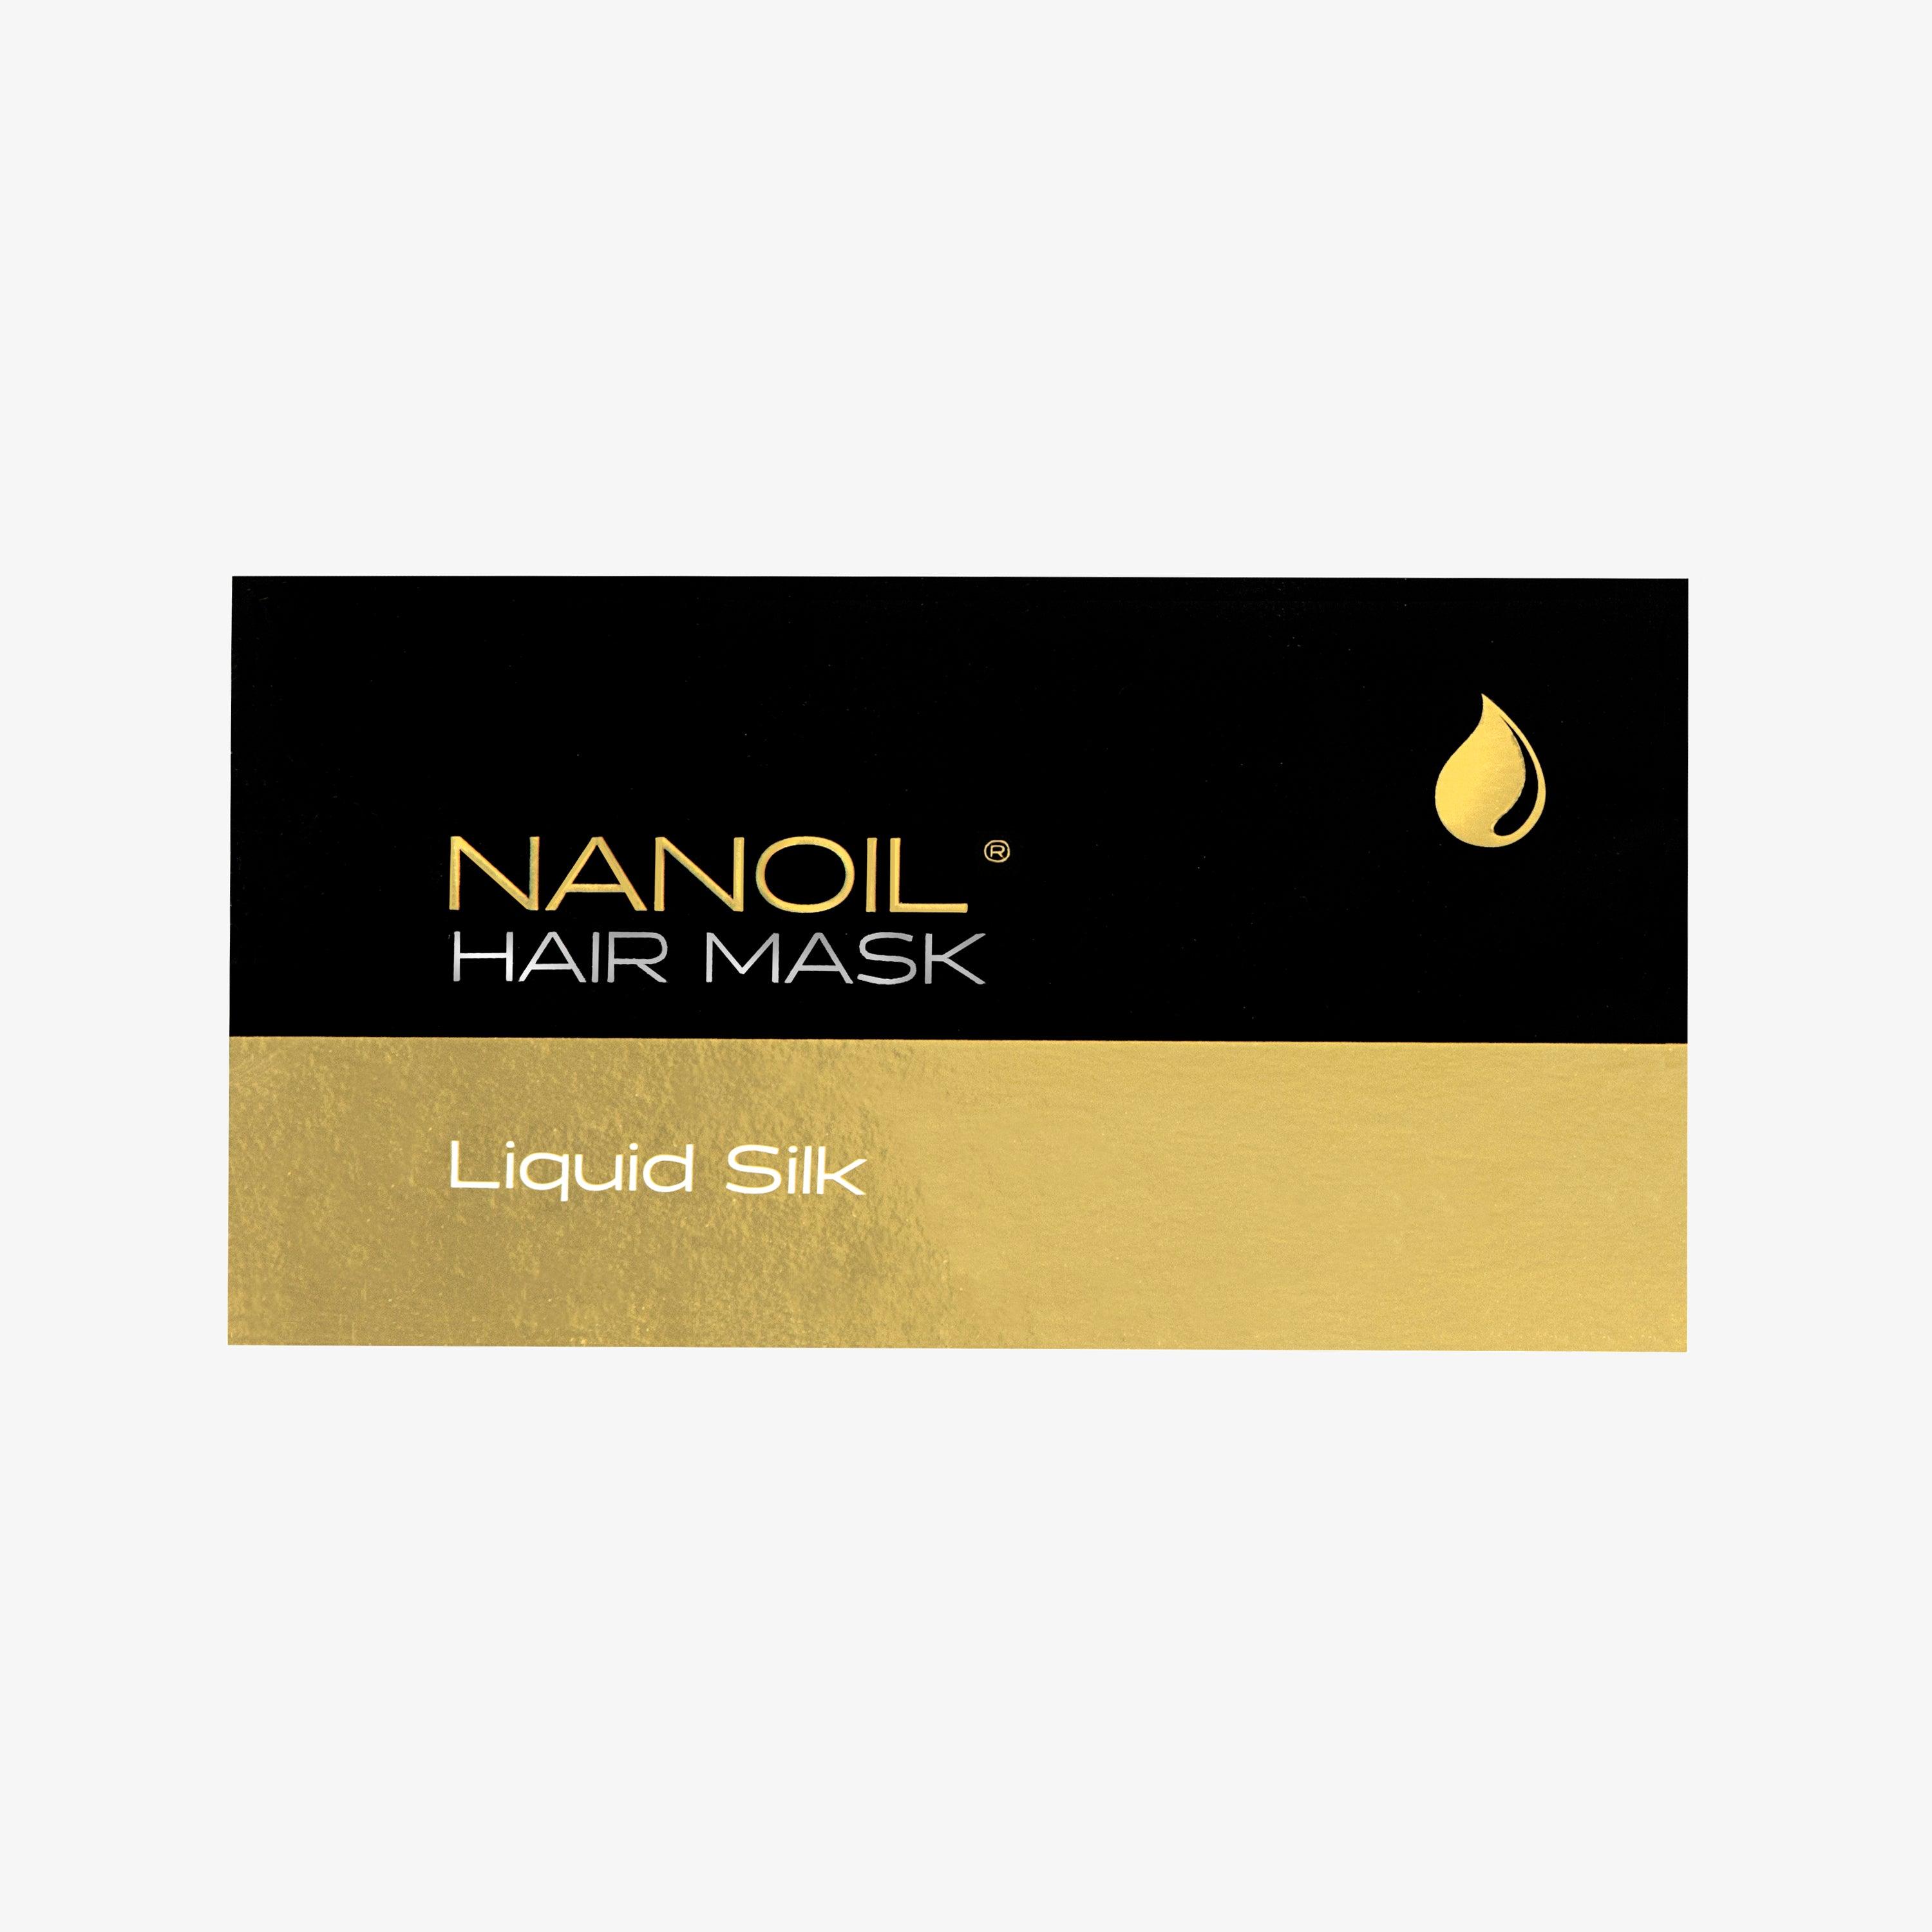 Nanoil Liquid Silk Hair Mask - SerumGeeks